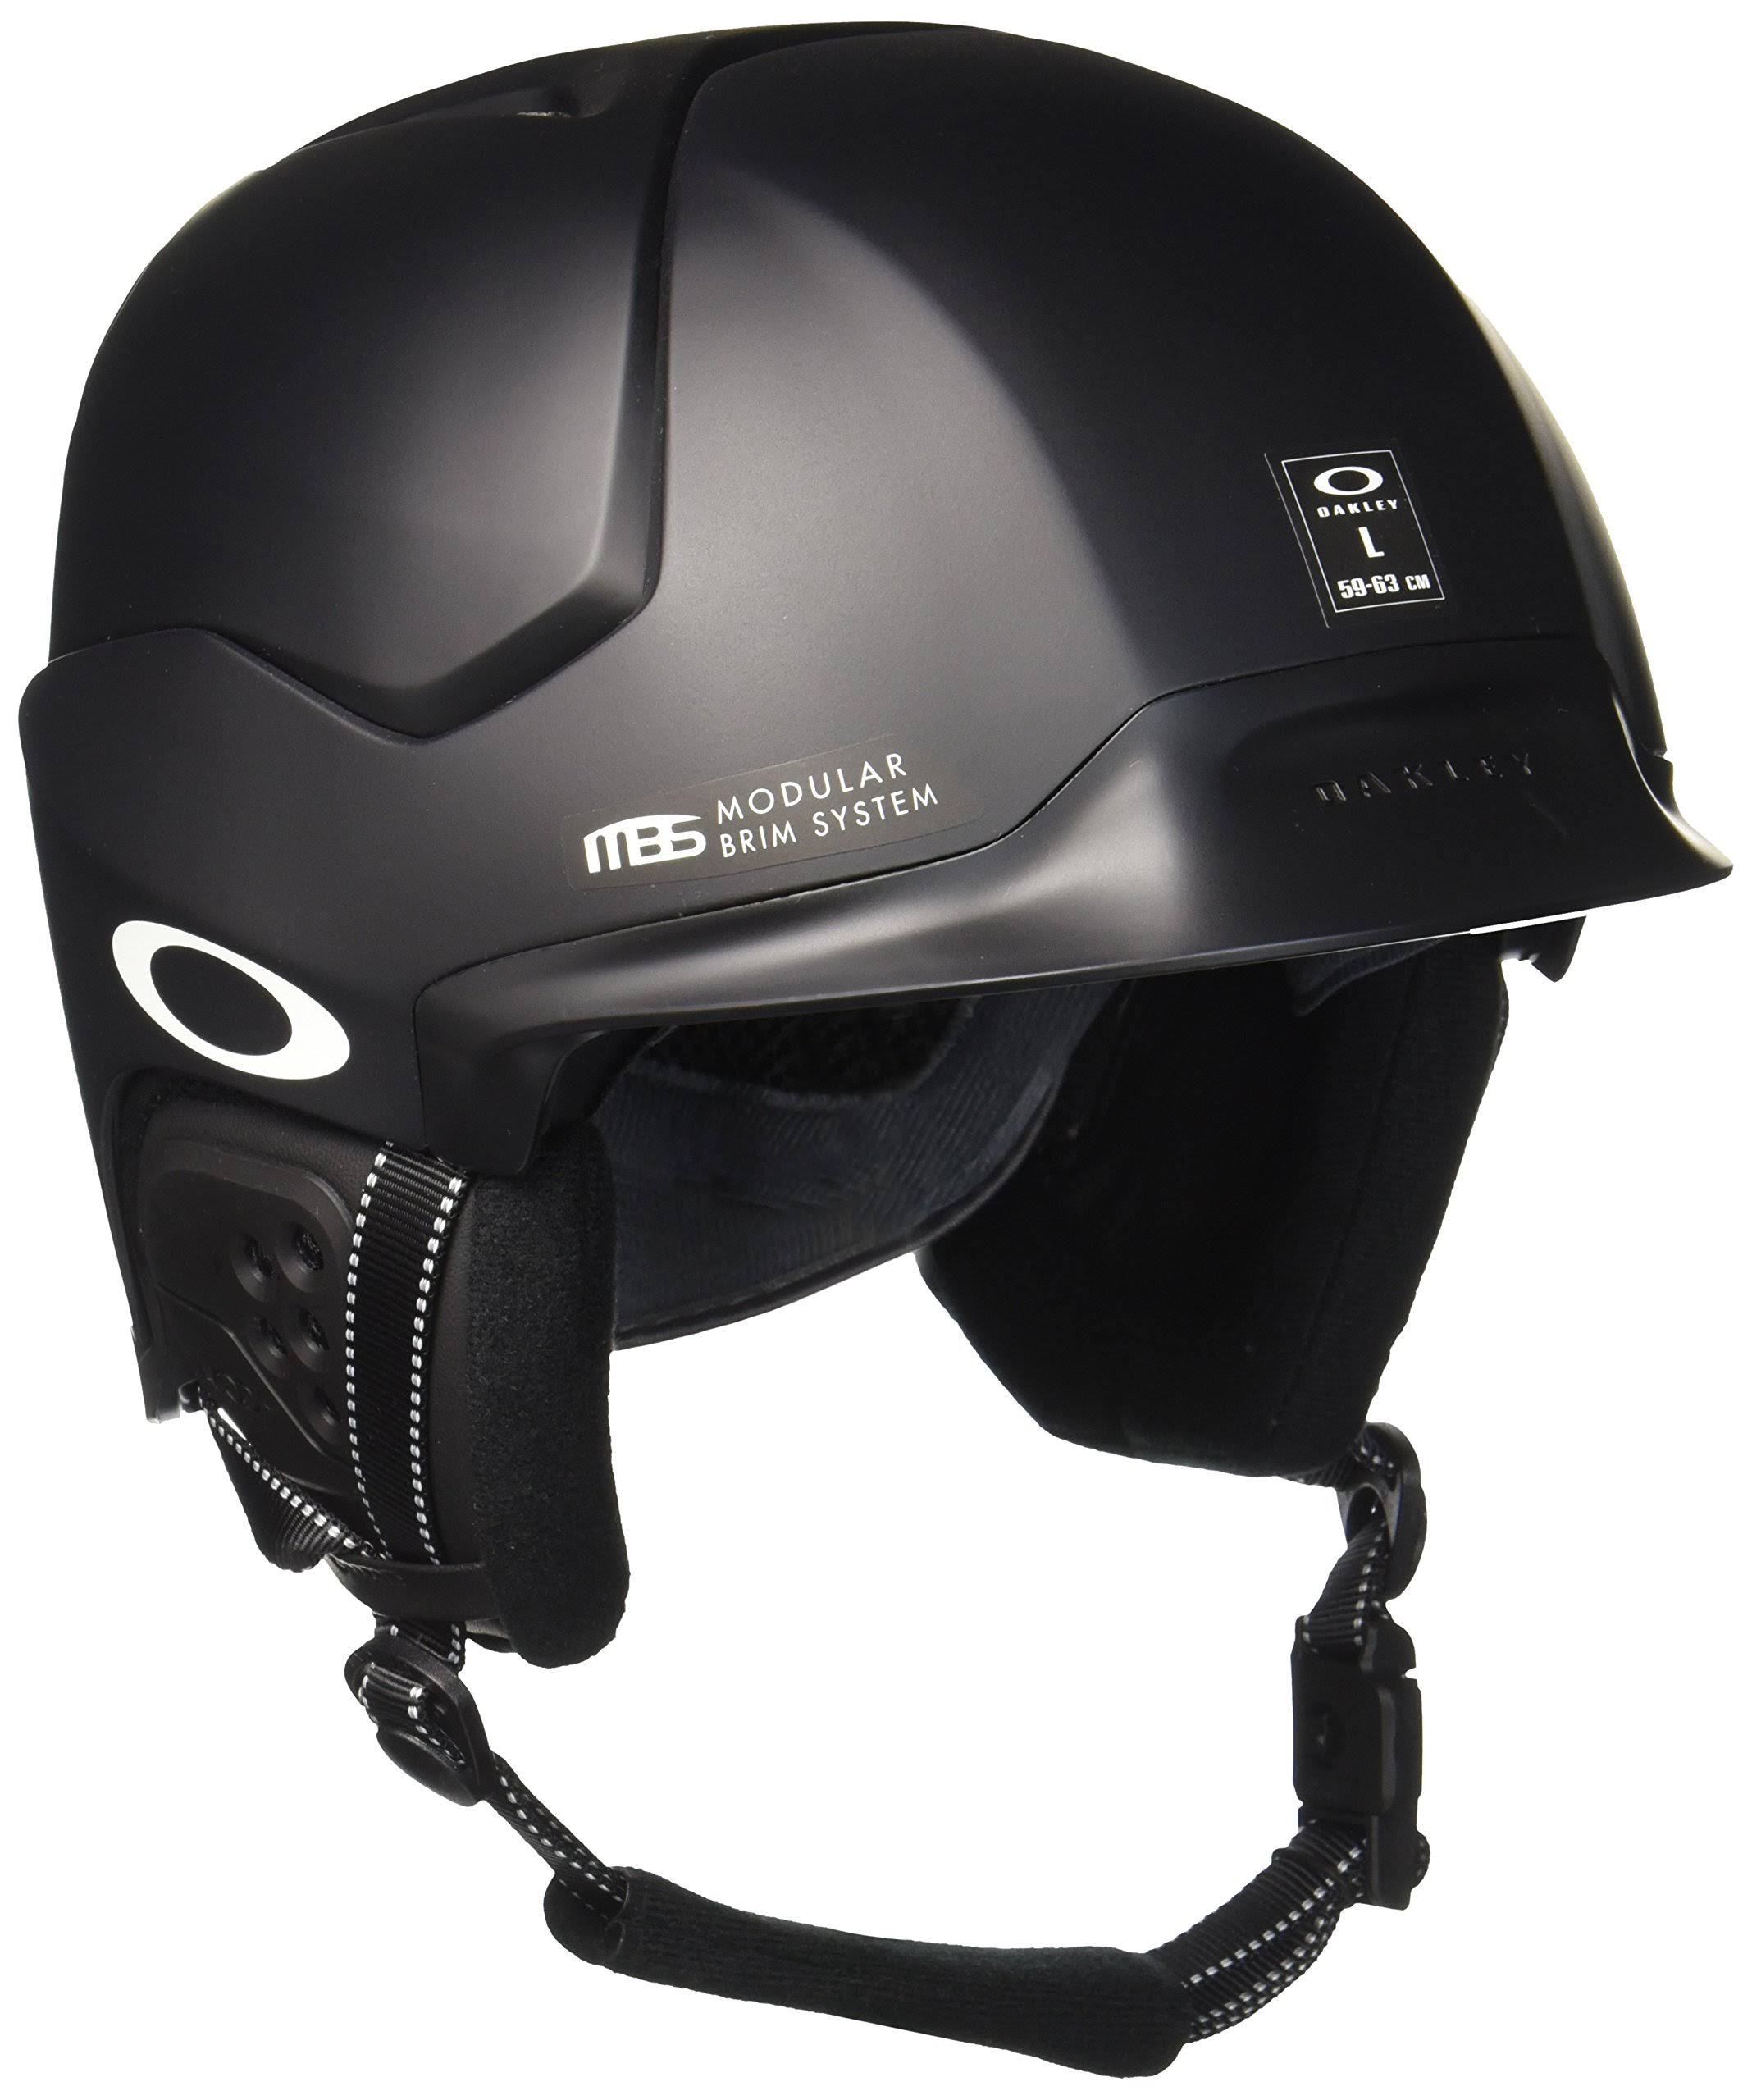 Oakley Mod5 Snow Helmet - Matte Black, Medium